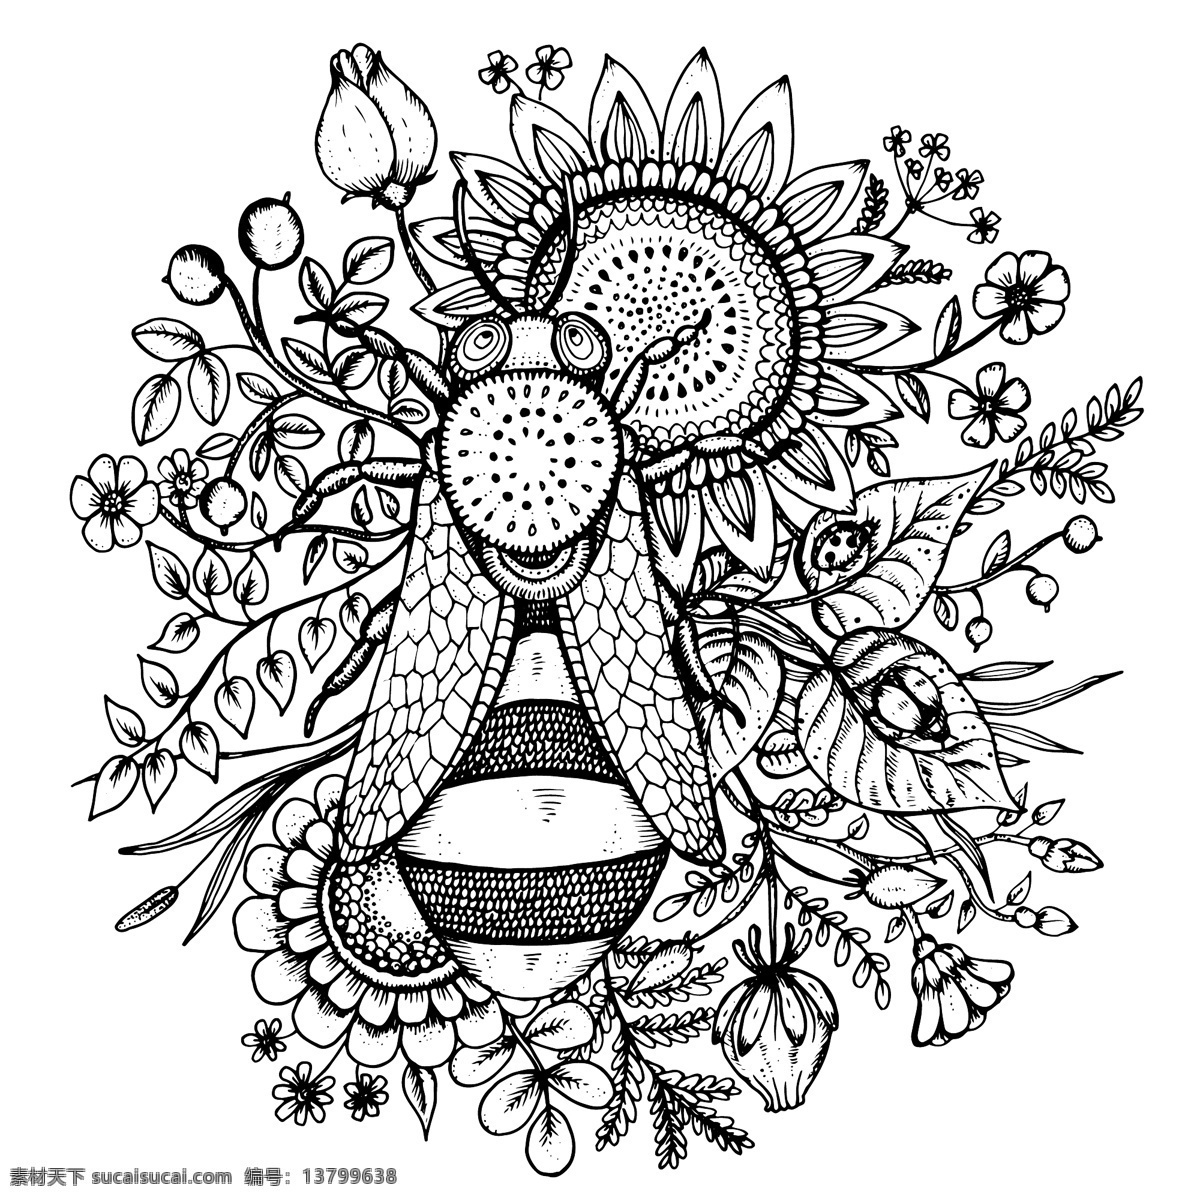 手绘 蜜蜂 葵花 花卉 向日葵 矢量图 eps格式 白色